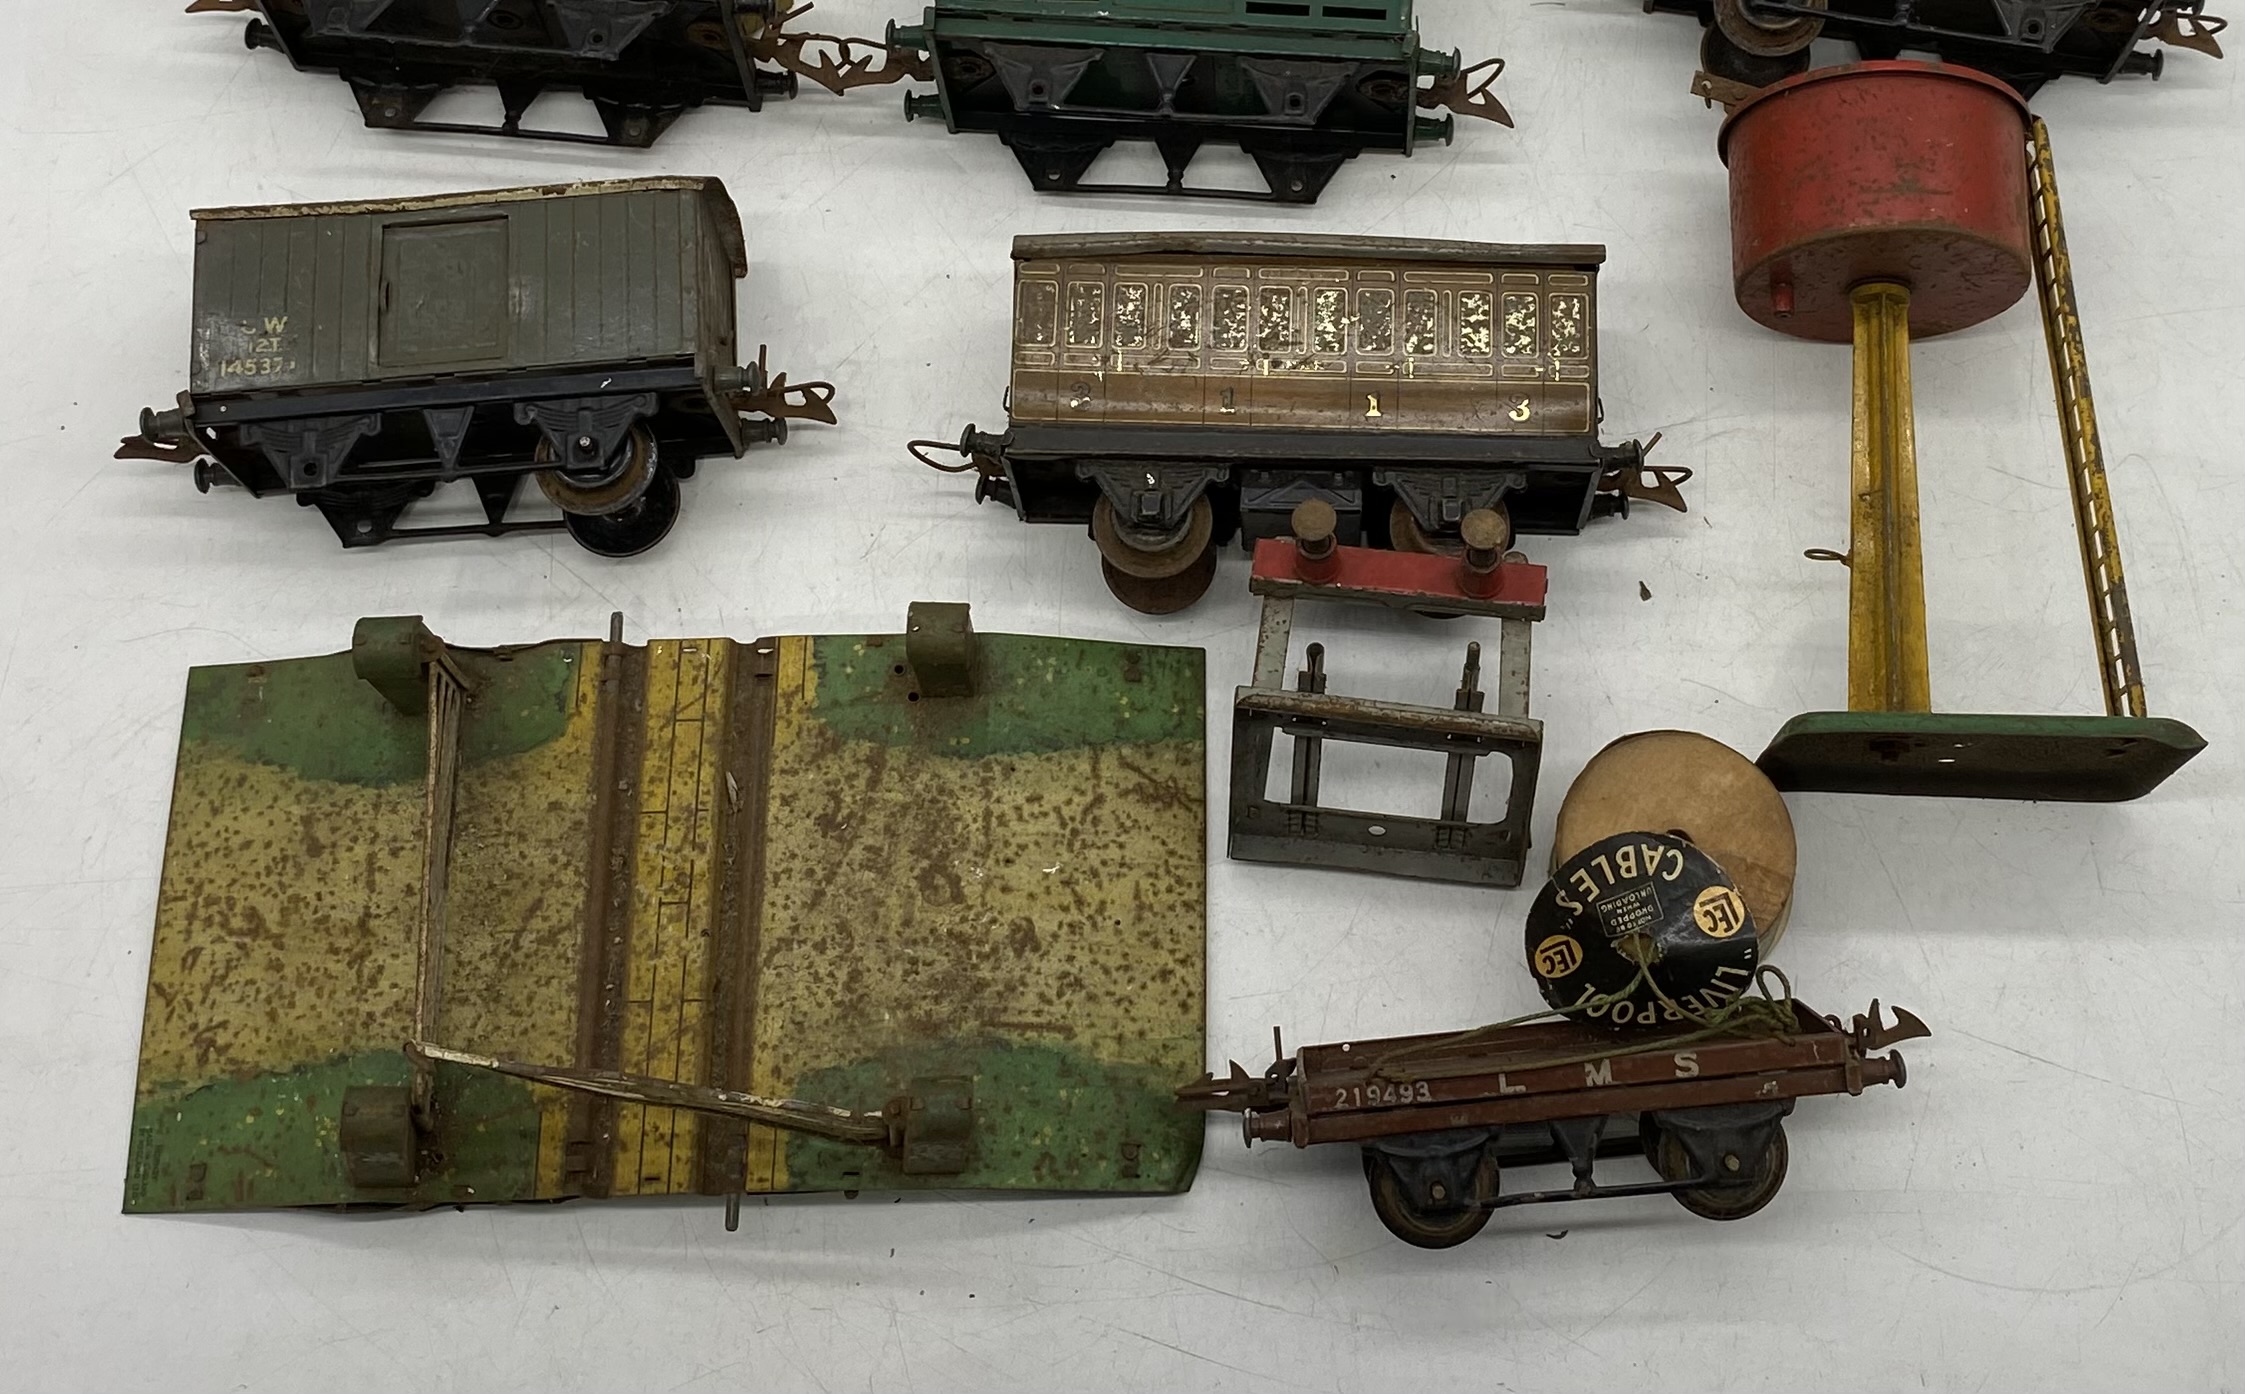 A vintage Hornby clockwork train set including locomotive, tender, rolling stock, tankers, - Image 4 of 5